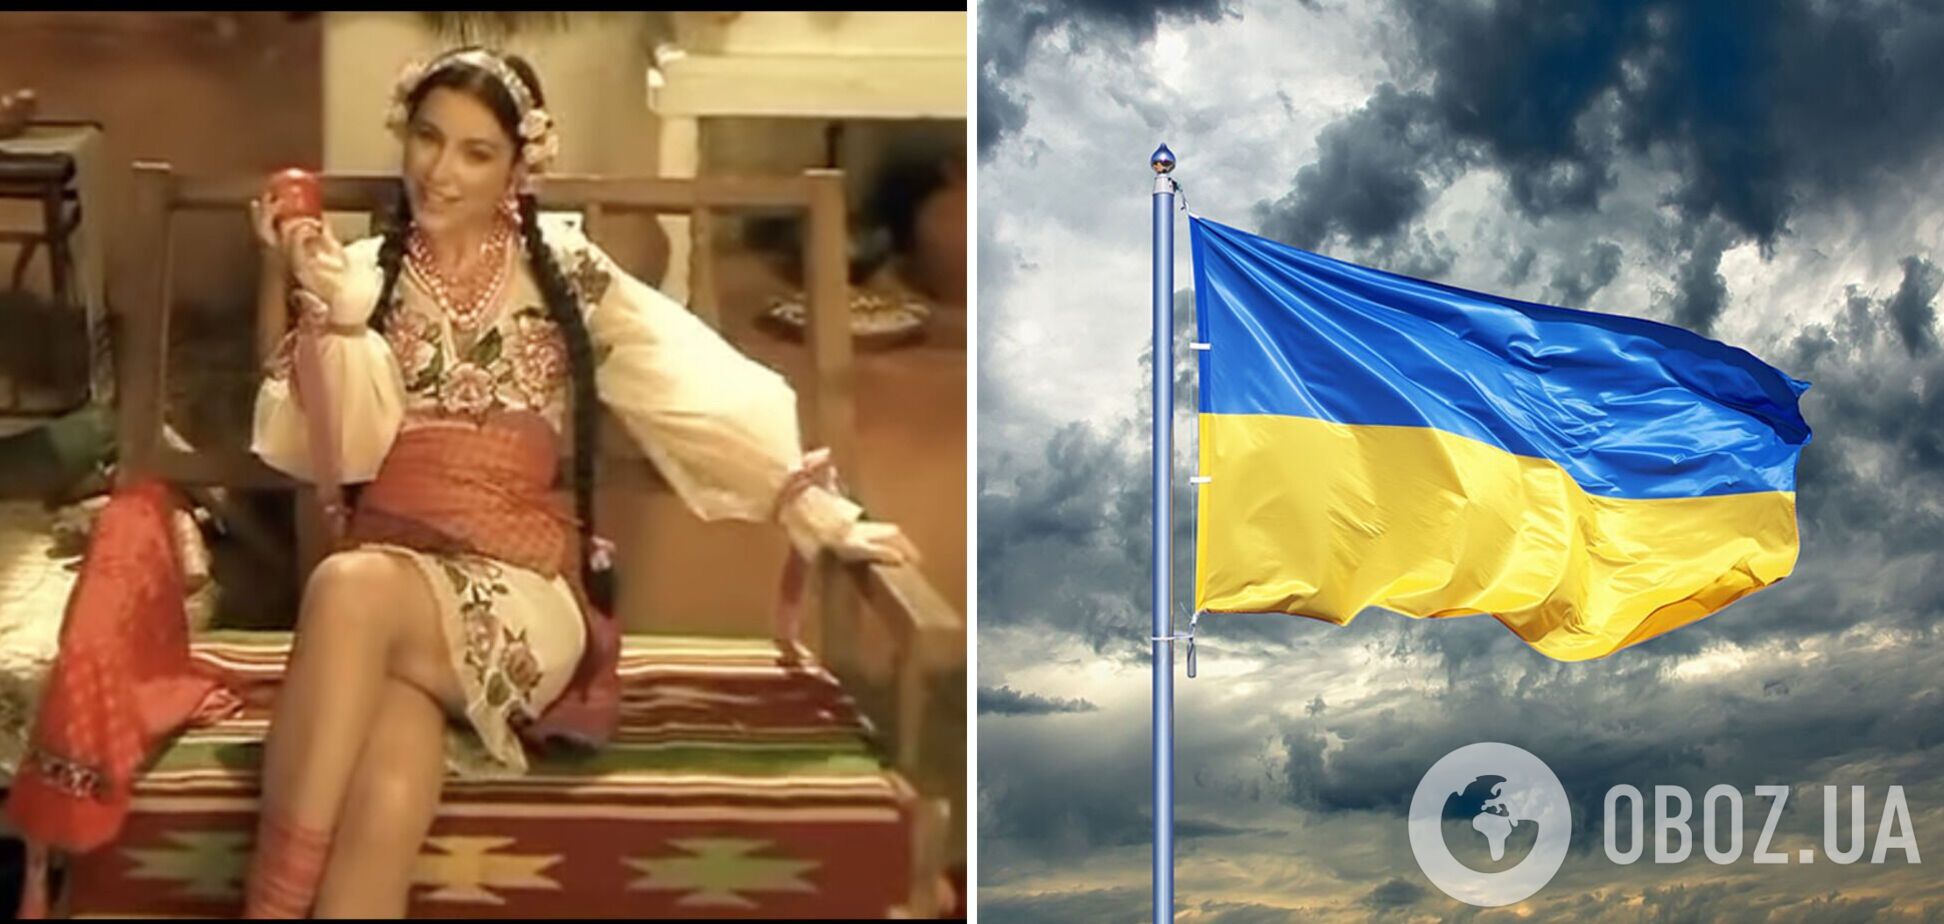 Ани Лорак разозлила украинцев ностальгическим постом о съемках на родине